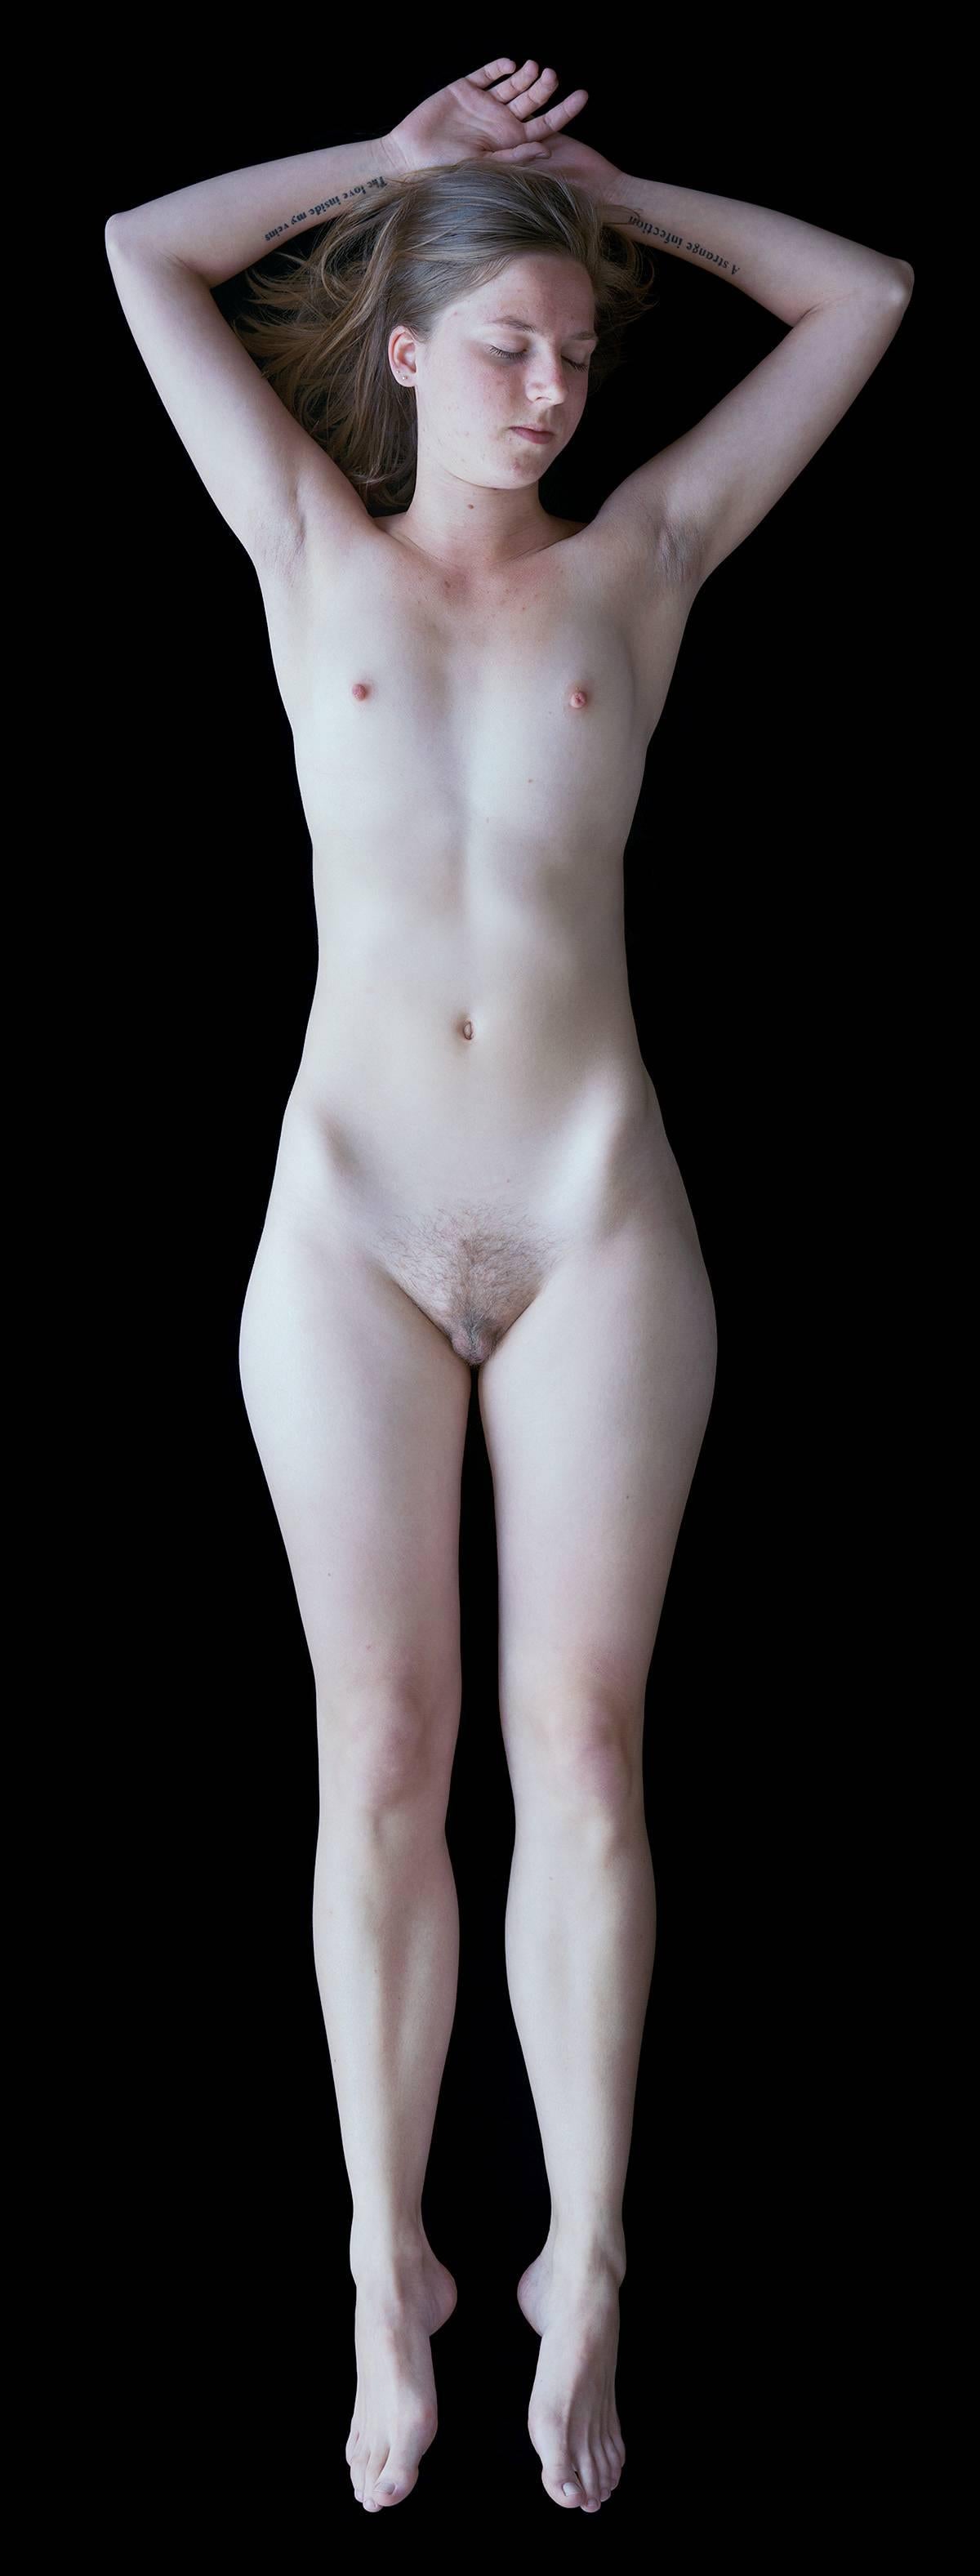 Carla van de Puttelaar Nude Photograph - 2008_30 – The Cranach Series